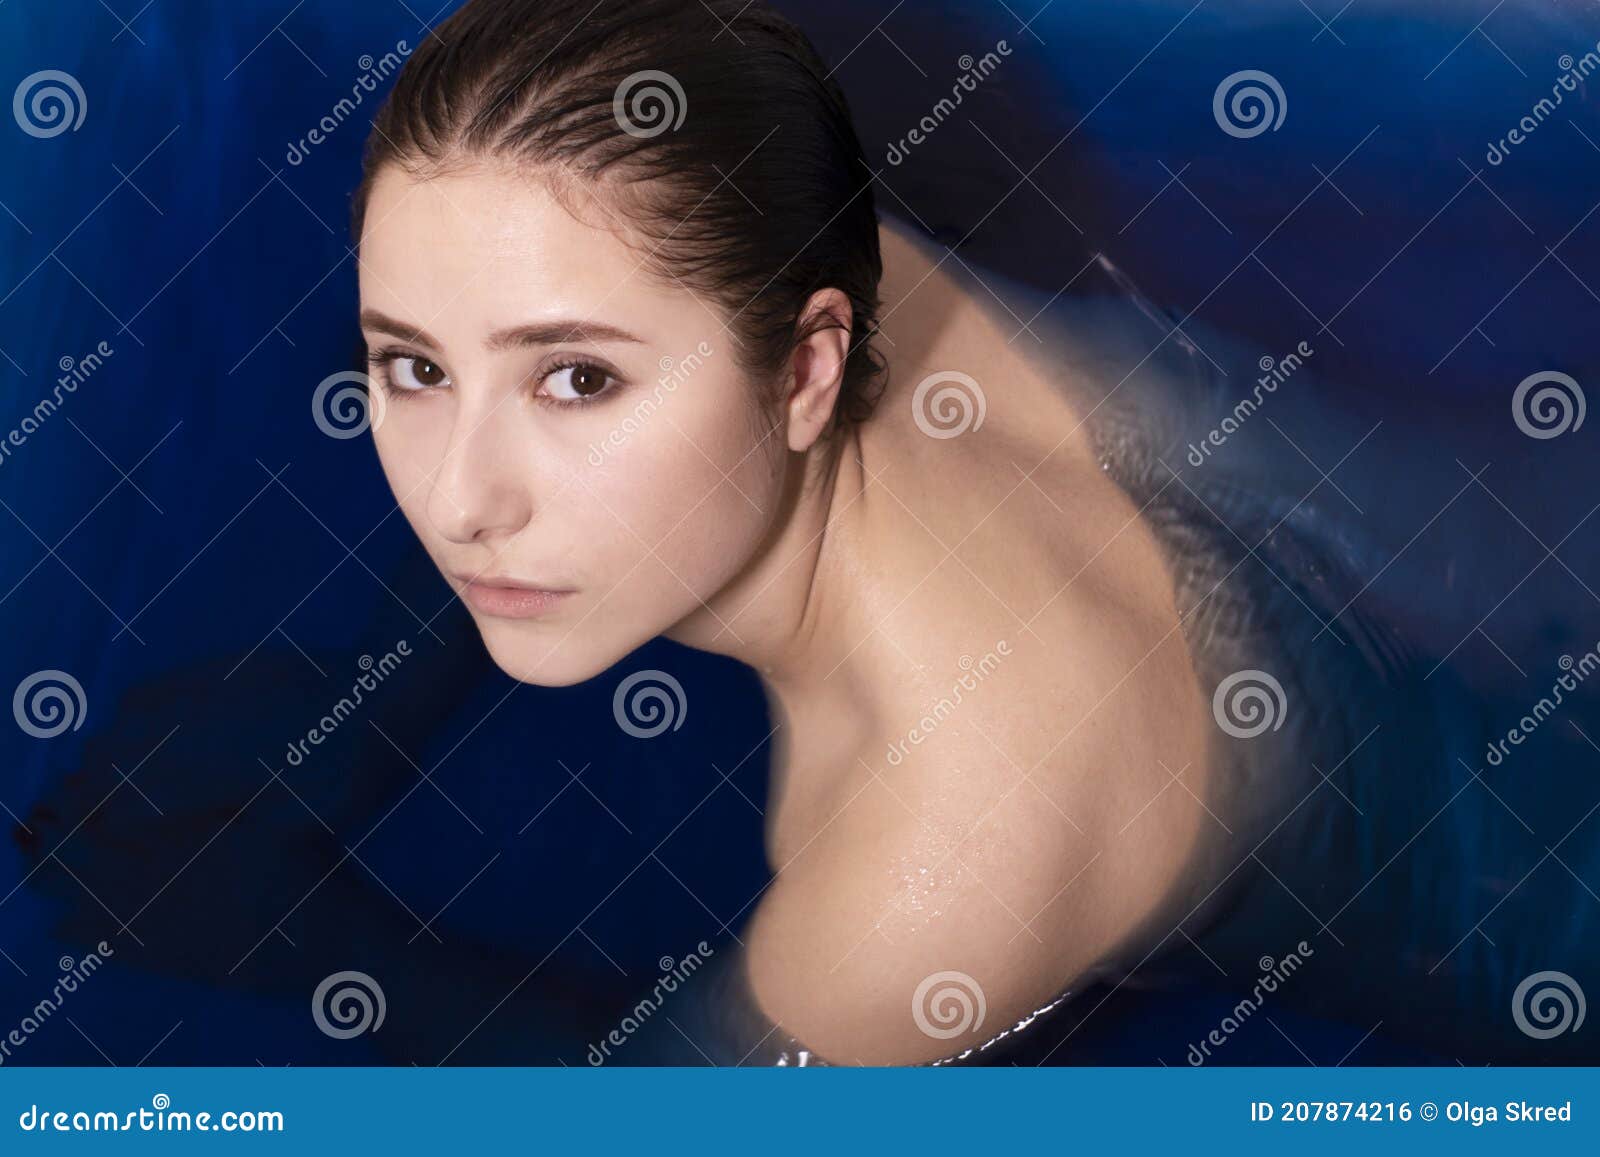 裸体化妆的美丽女人的肖像照片摄影图片_ID:138600944-Veer图库